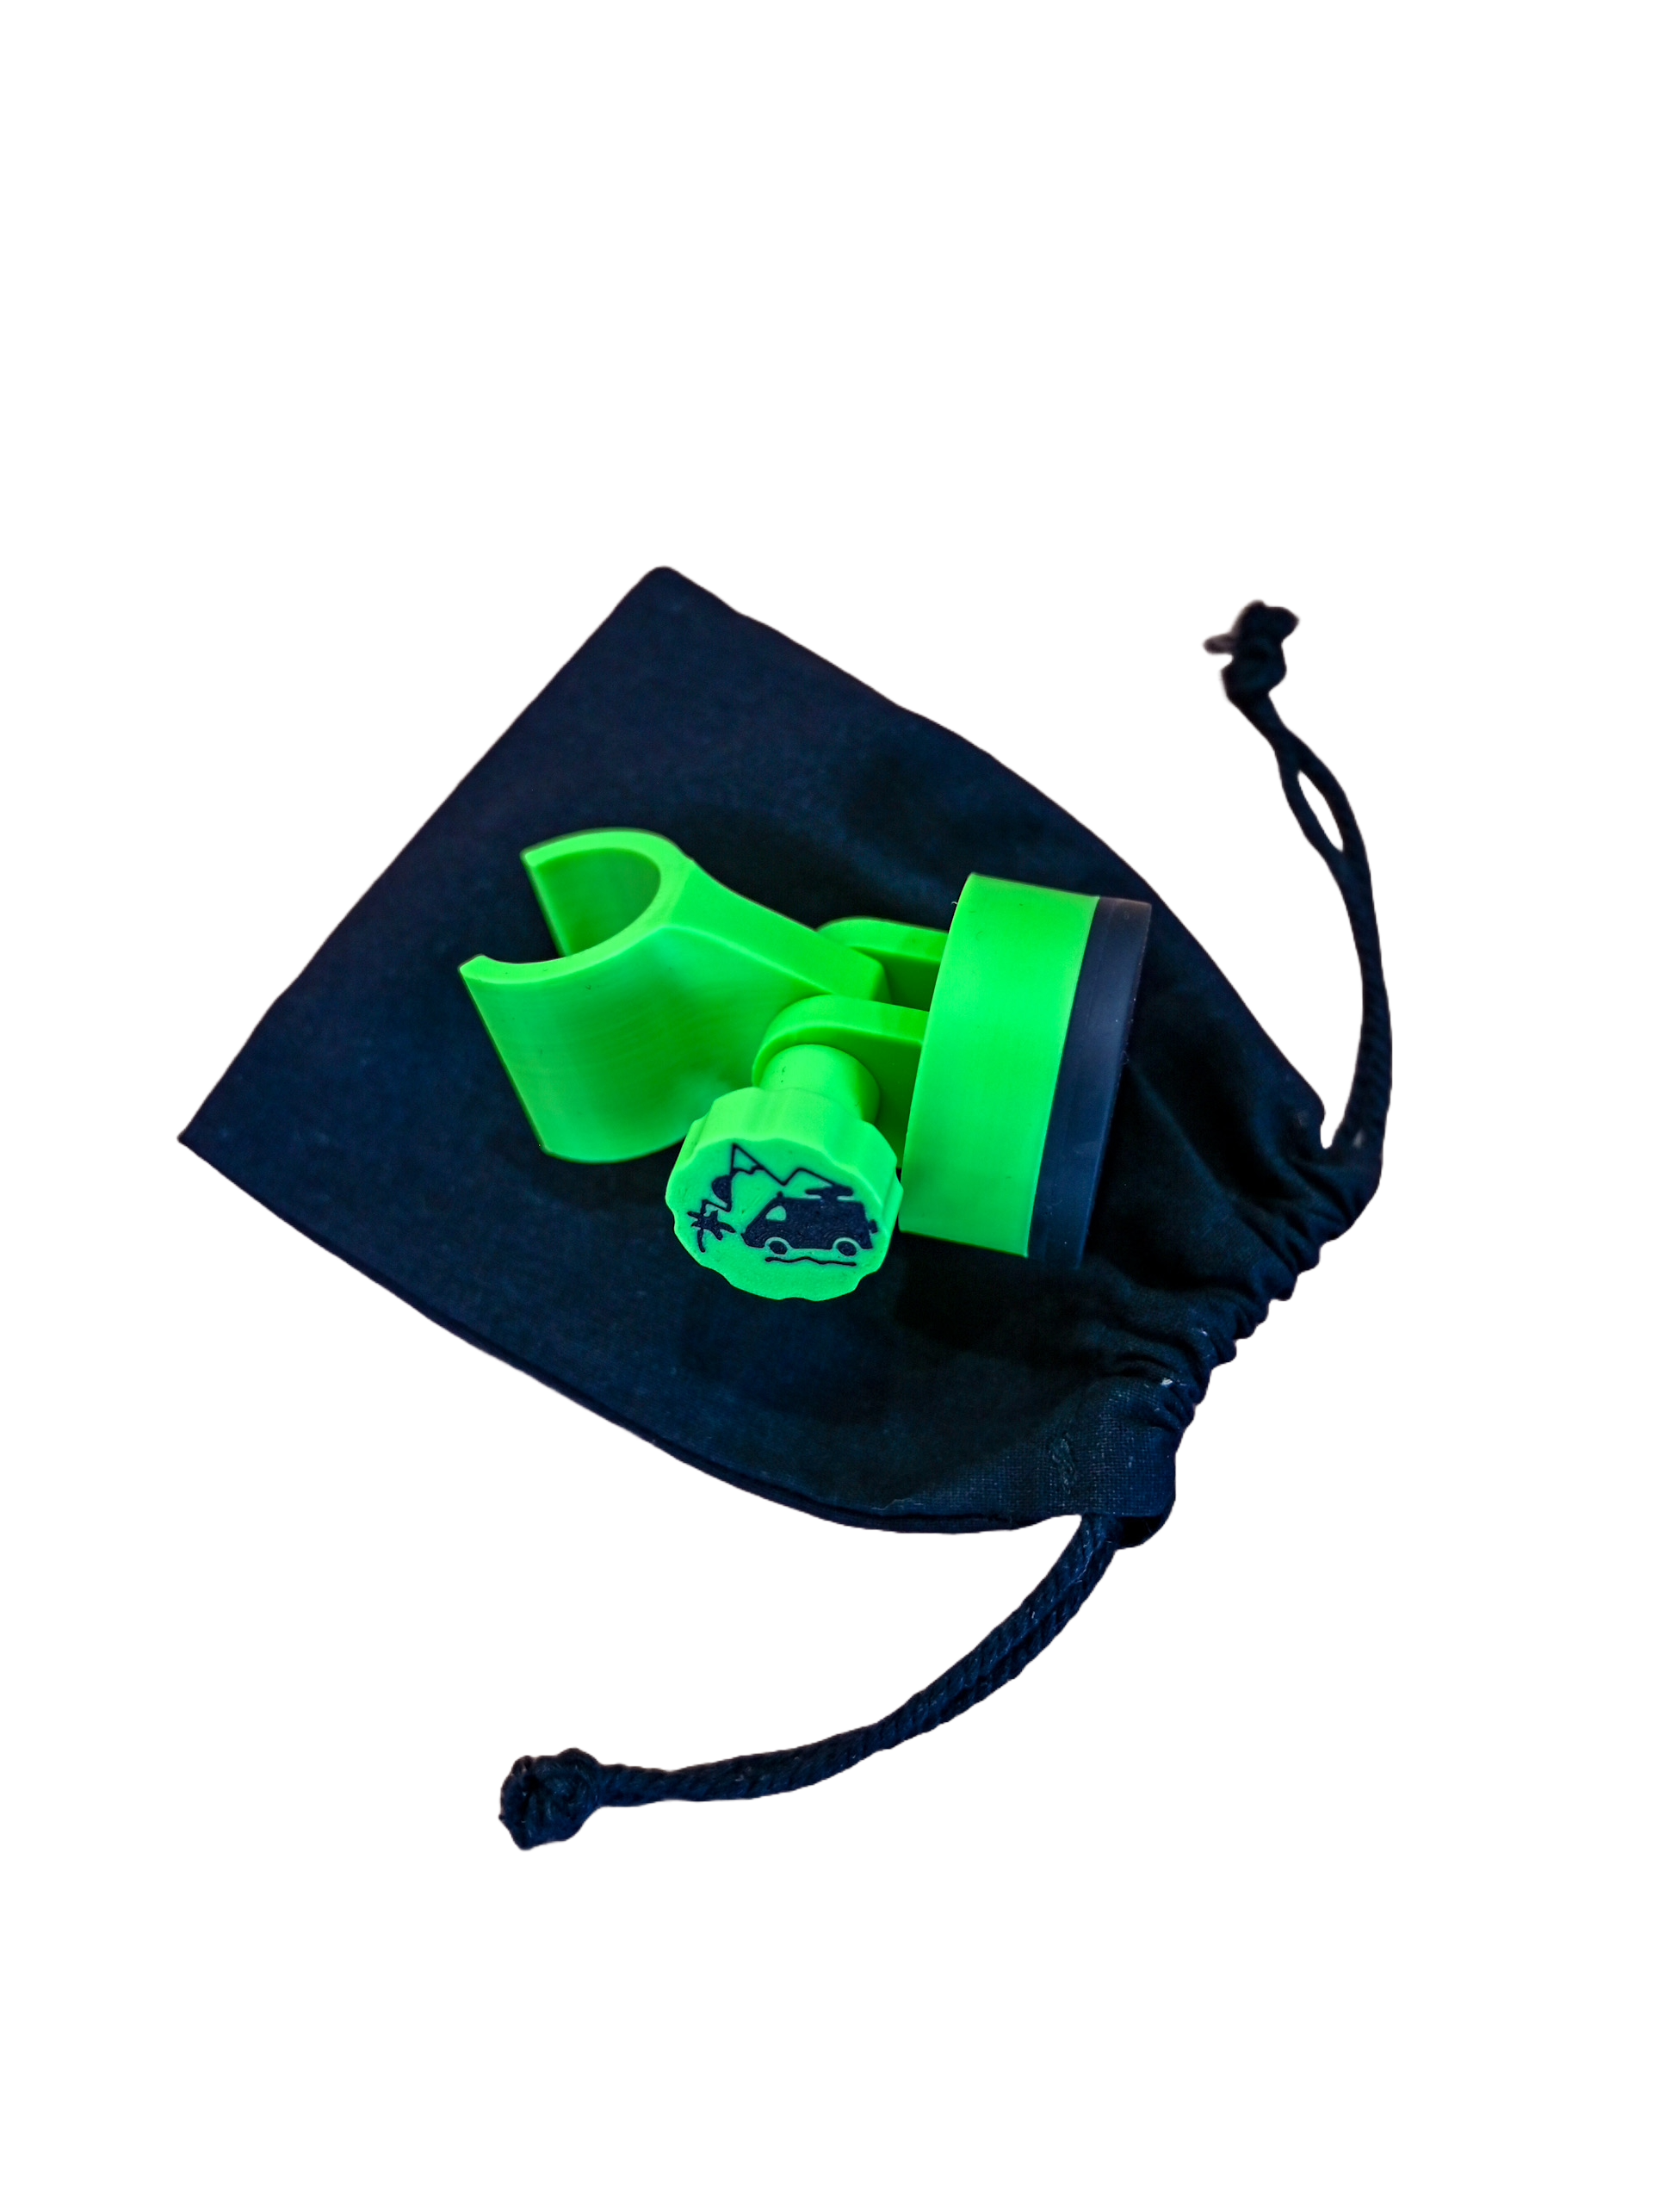 El soporte de ducha magnético - Offrotie impreso en 3D - Portátil para Vanlife 